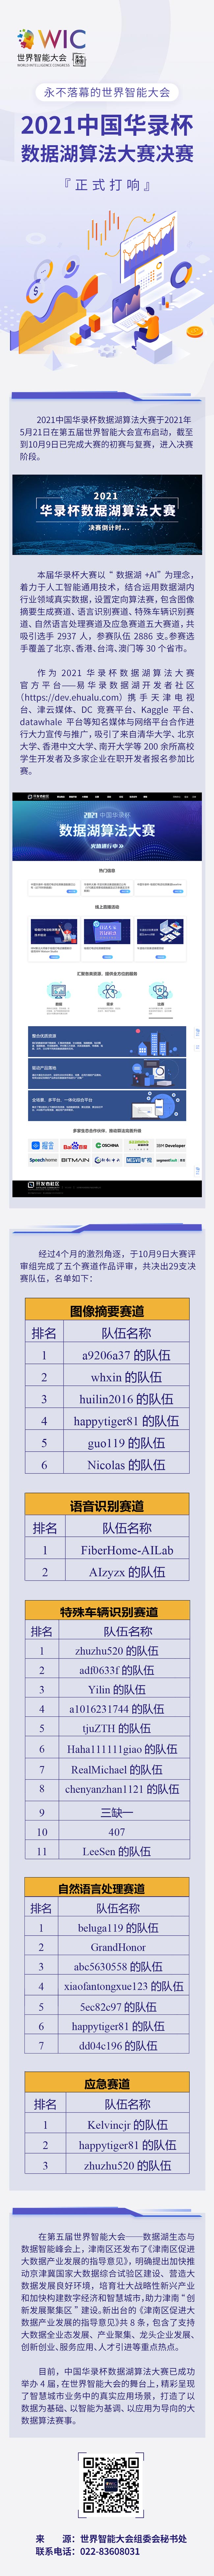 【津彩鲜知】永不落幕的世界智能大会：2021中国华录杯数据湖算法大赛决赛正式打响！